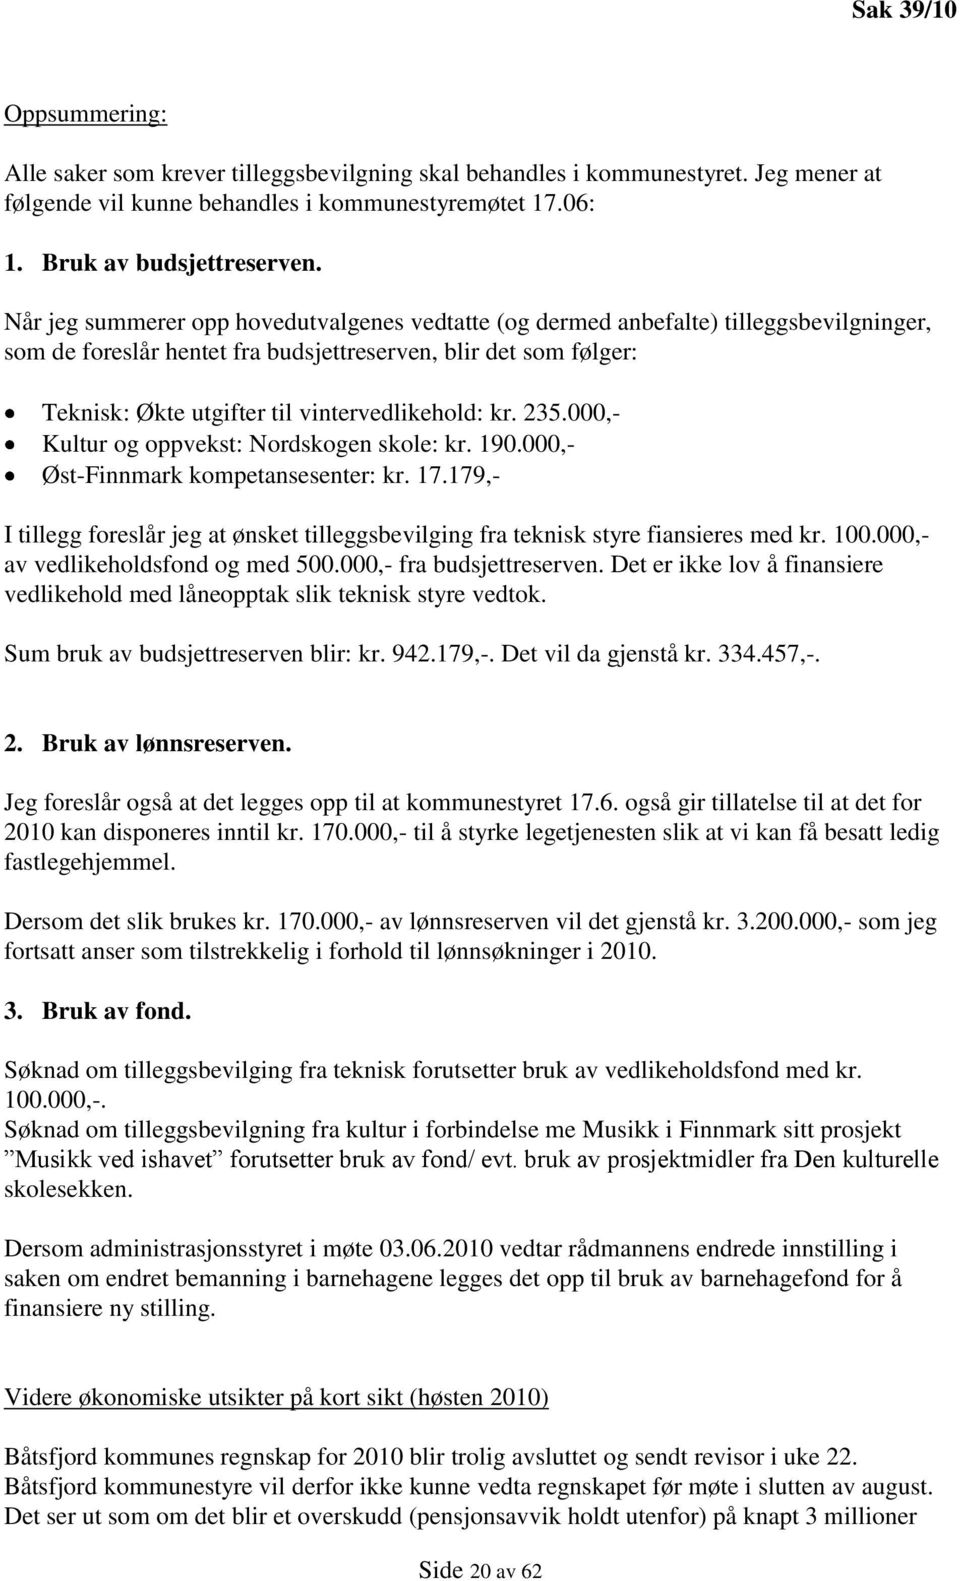 vintervedlikehold: kr. 235.000,- Kultur og oppvekst: Nordskogen skole: kr. 190.000,- Øst-Finnmark kompetansesenter: kr. 17.